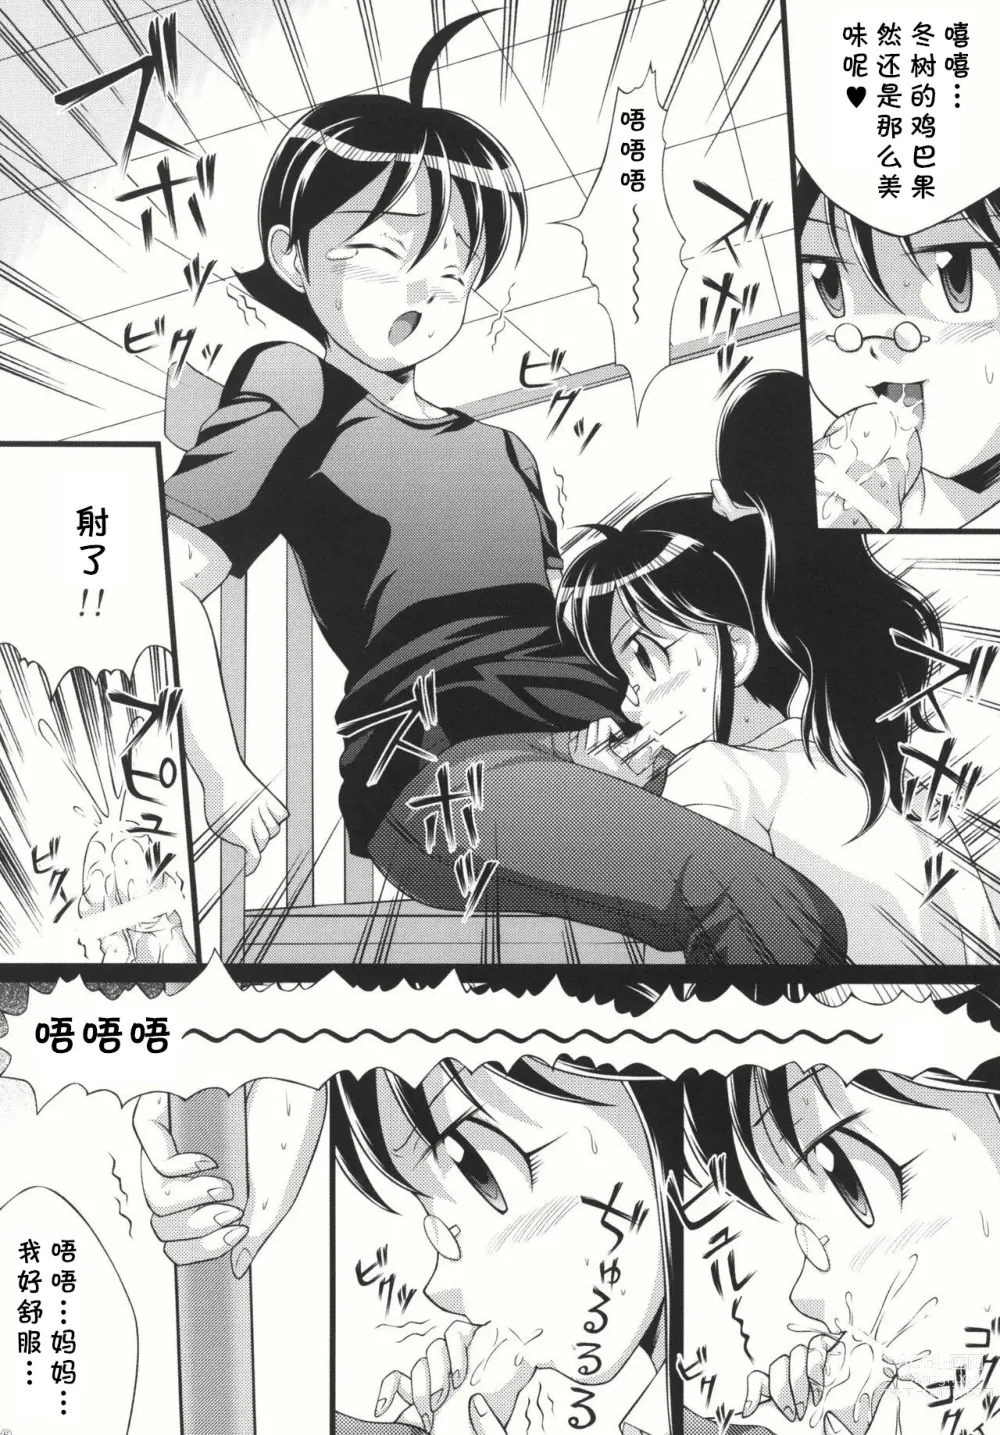 Page 8 of doujinshi Pekopon Maruhi Seitai Chousa Houkokusho 4